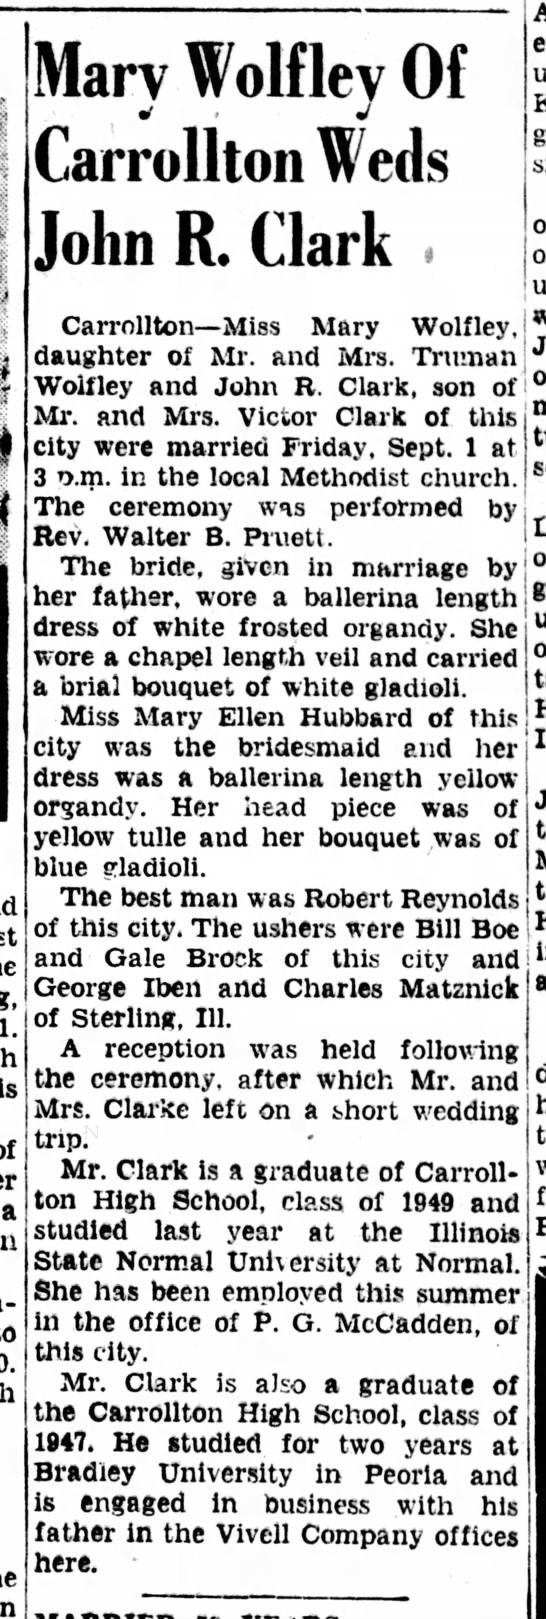 The Jacksonville Daily Journal, September 2, 1950